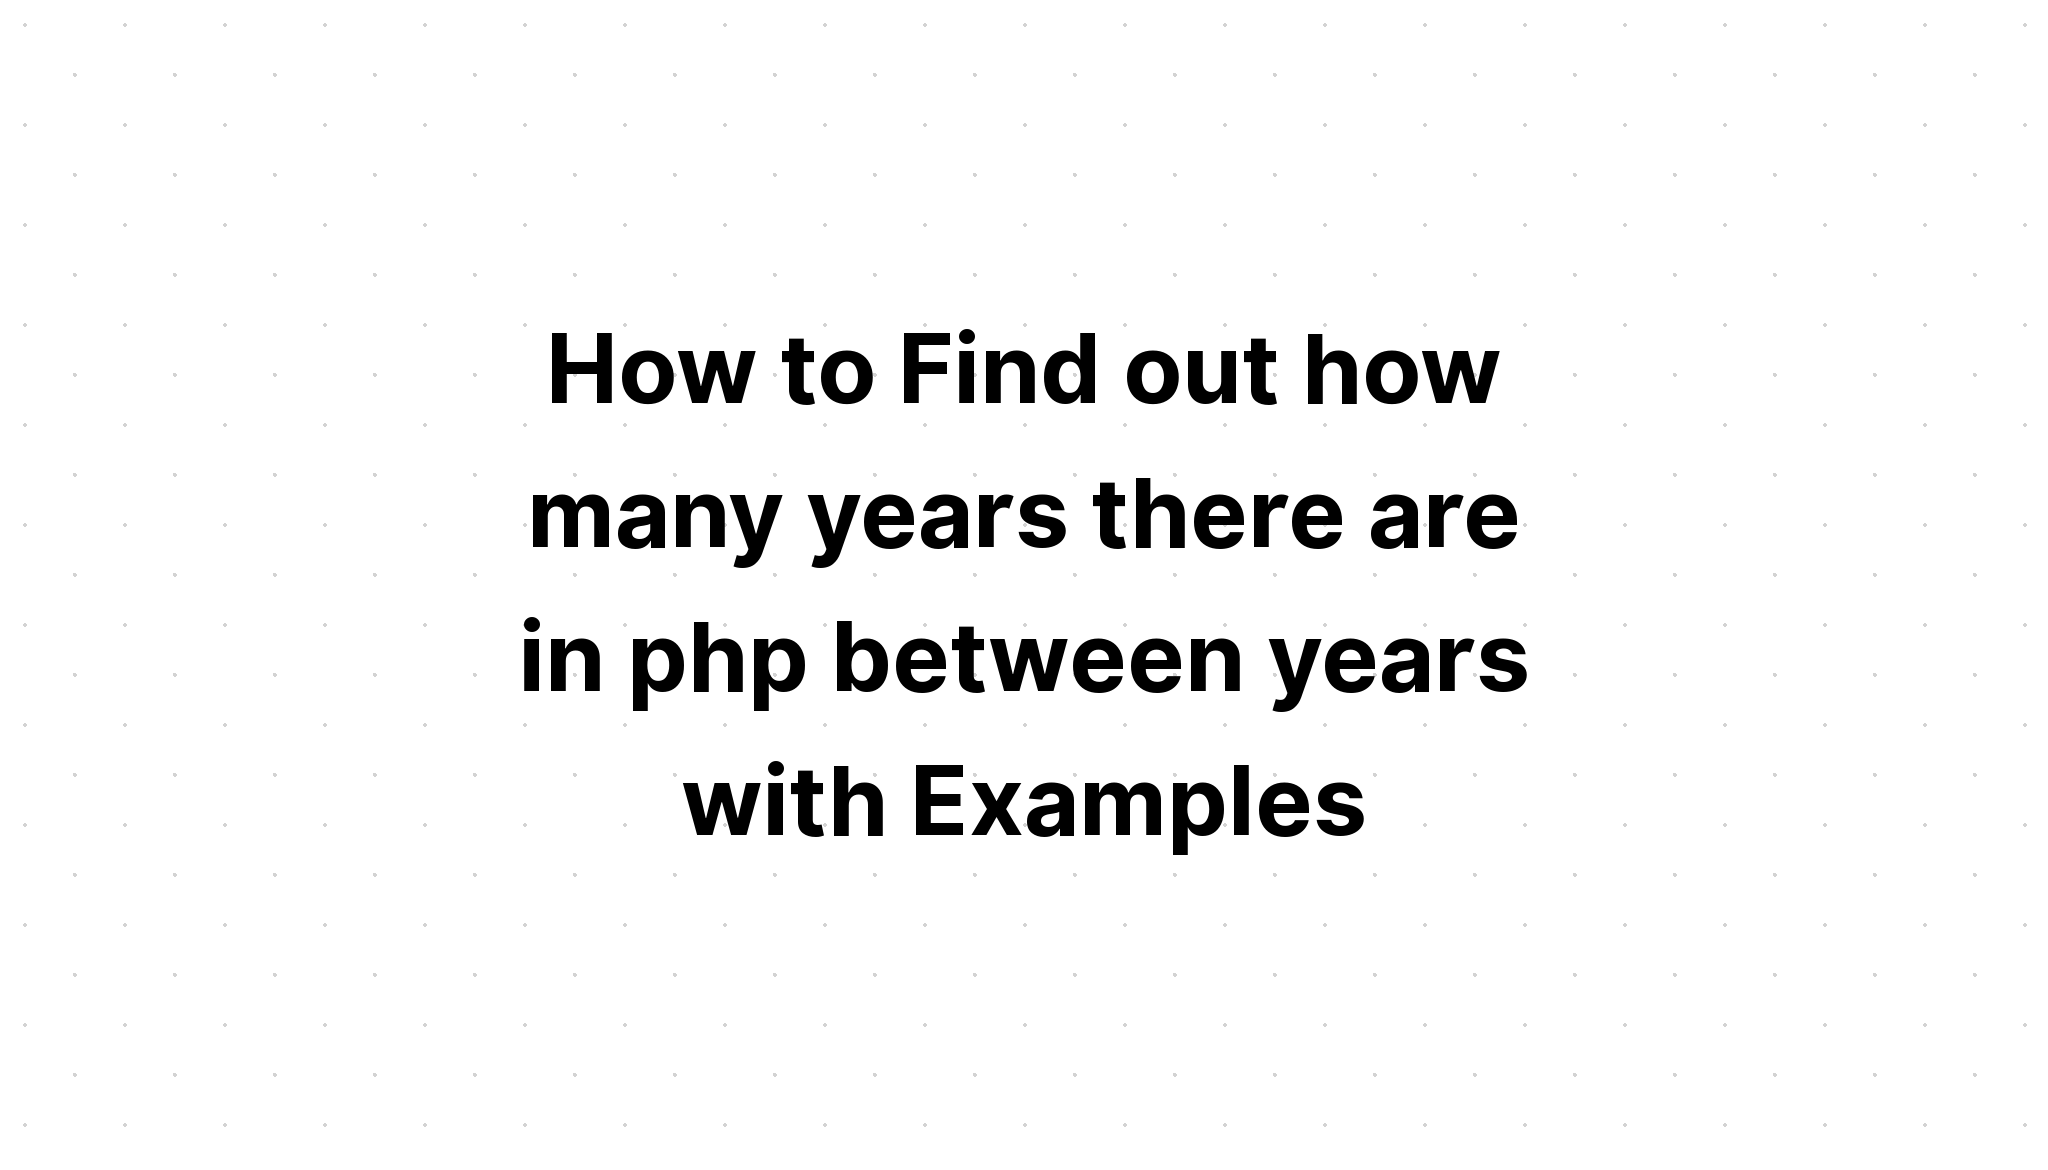 Cách tìm hiểu có bao nhiêu năm trong php giữa các năm với các ví dụ